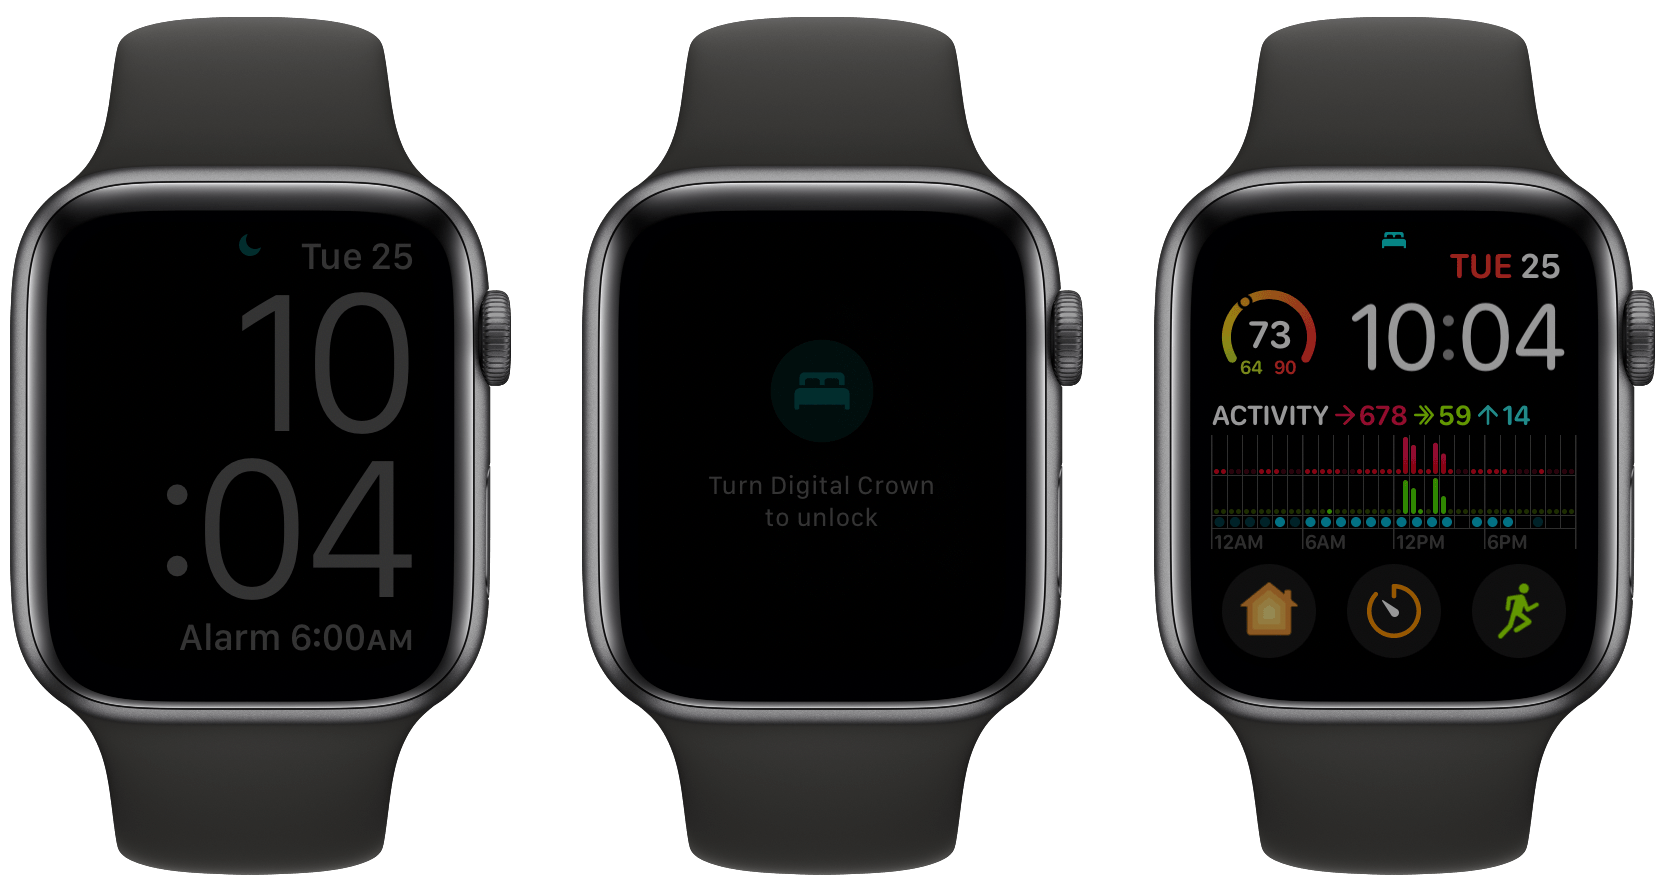 Apple Watch in sleep mode.